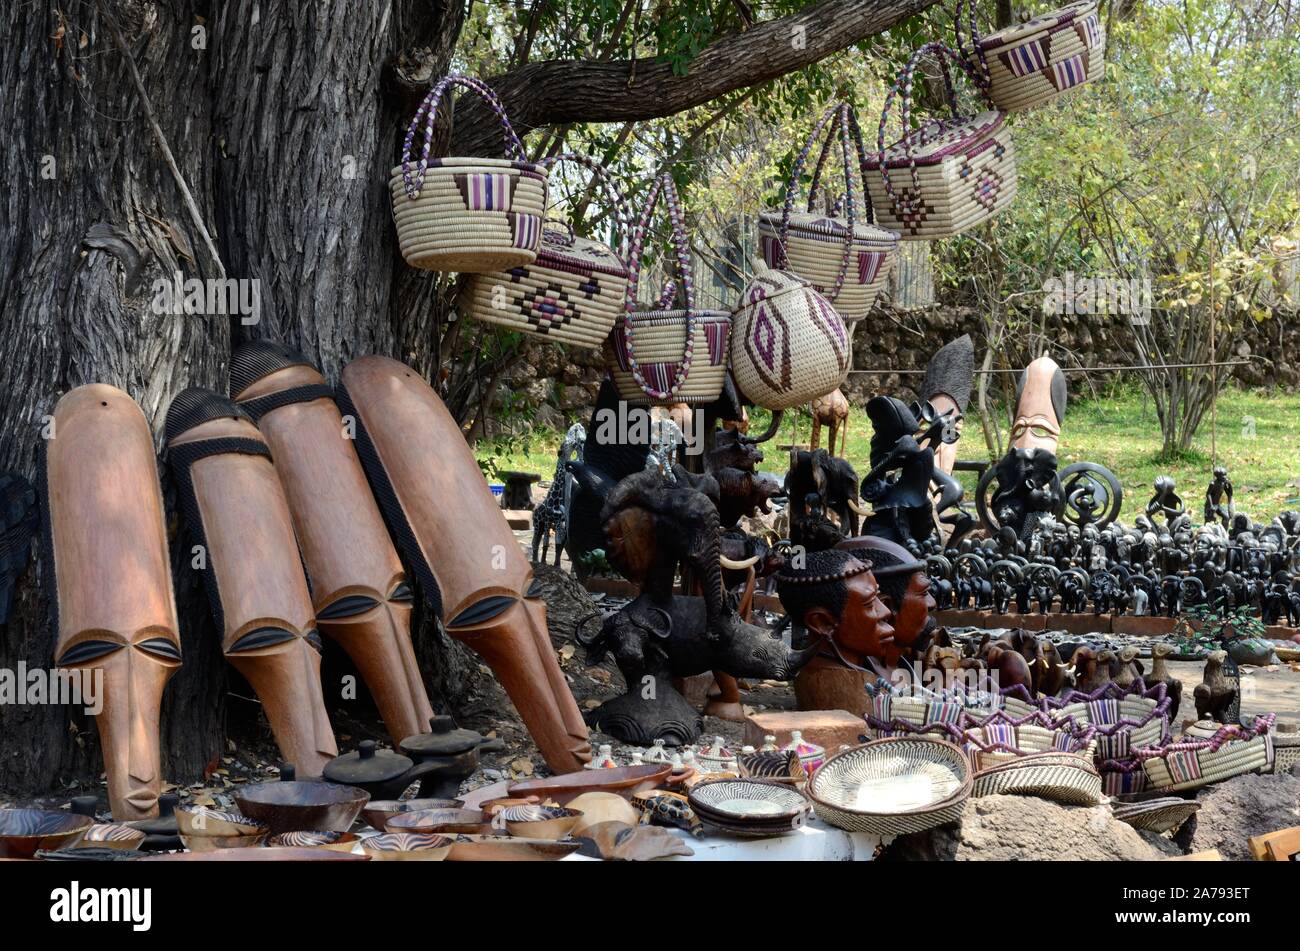 Traditionelle Btswanan Tribal Art Craft zum Verkauf an einer Straße Markt Botswana Afrca Stockfoto